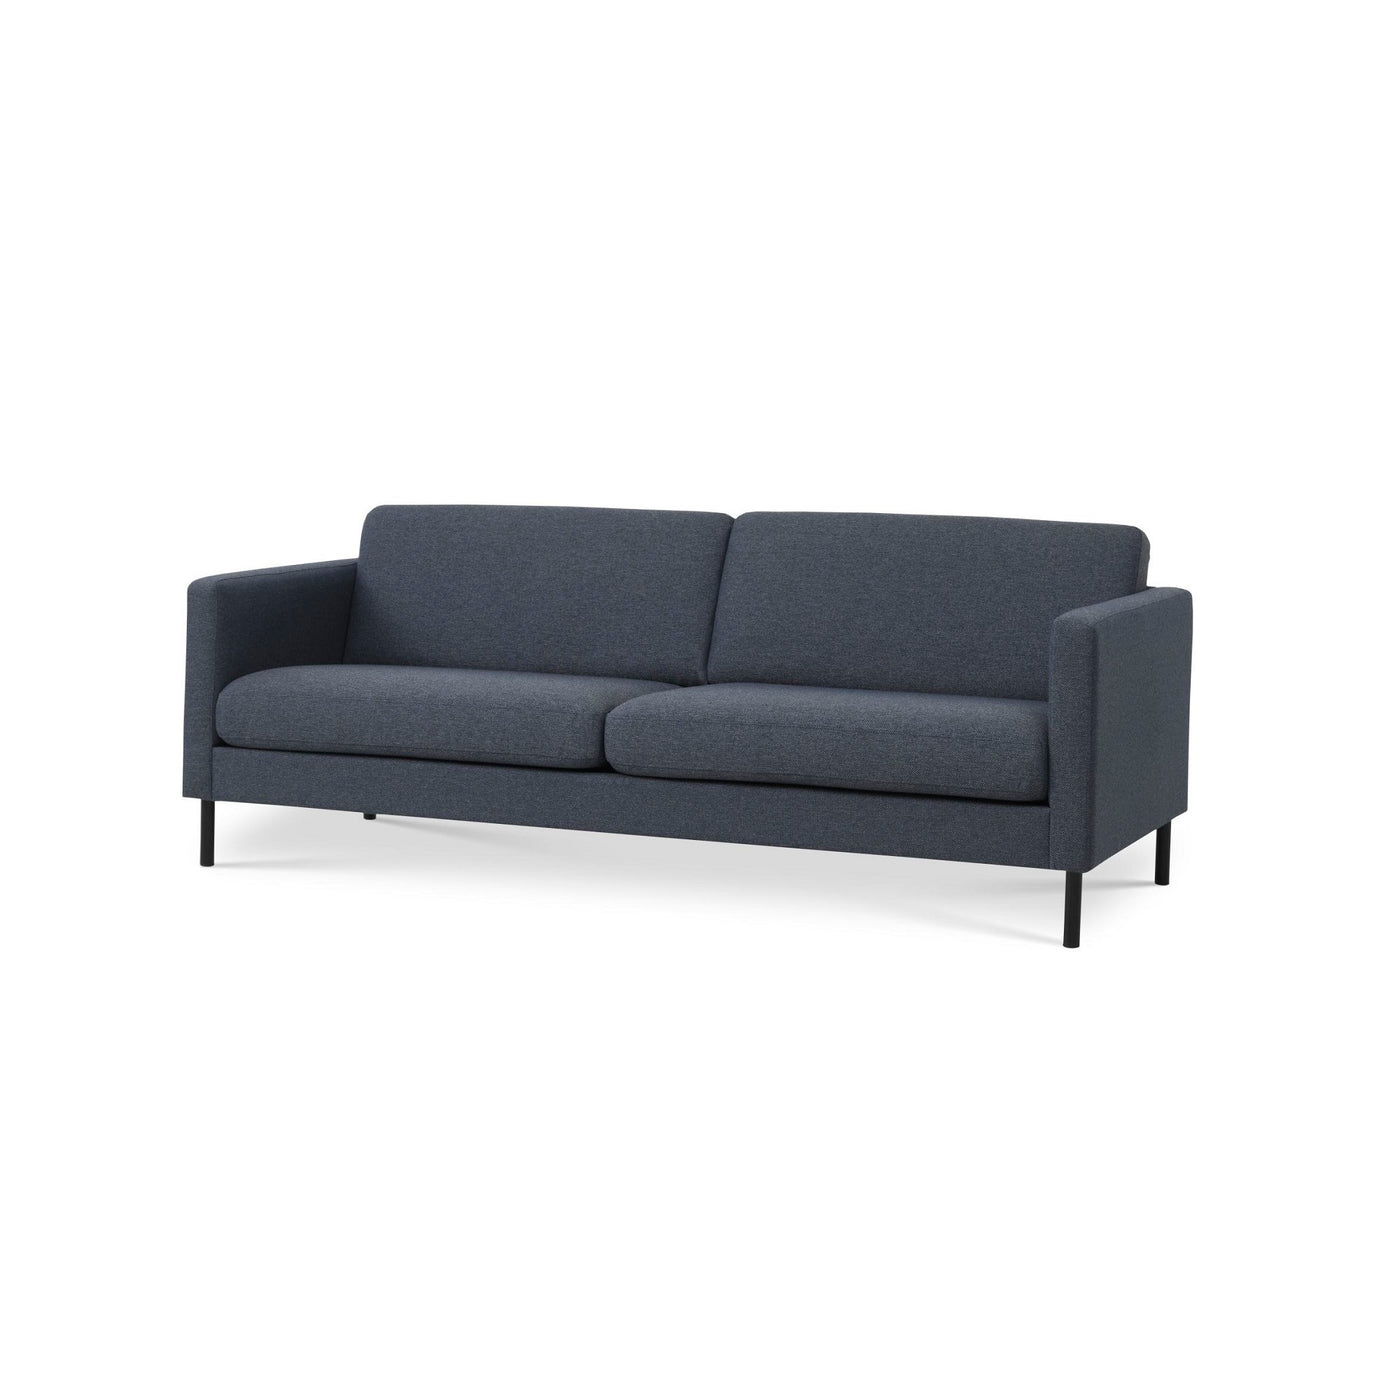 Nebraska 3-pers sofa fra Lexpo monteret med slidstærkt blåt Golf møbelstof og sorte metalben